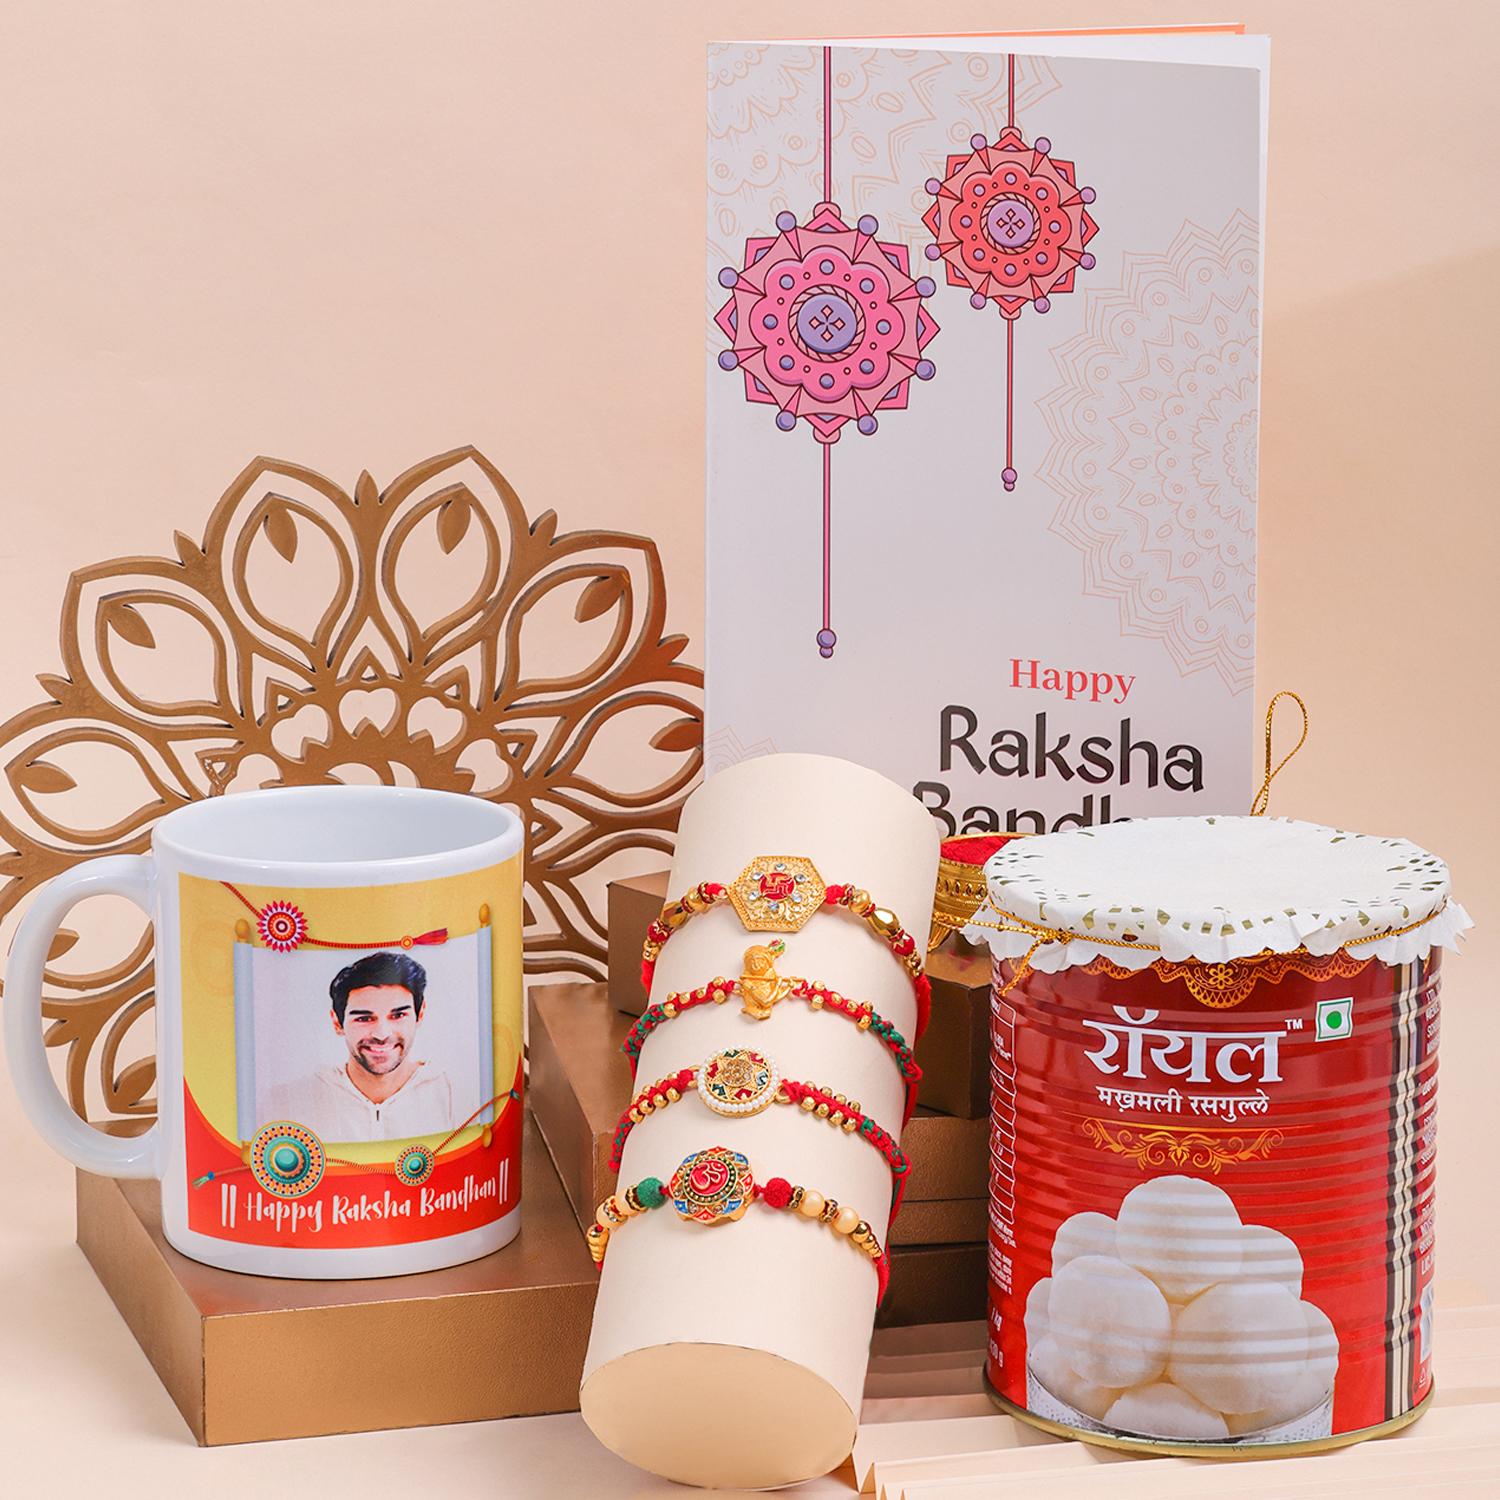 Rakhi Gift Images - Free Download on Freepik